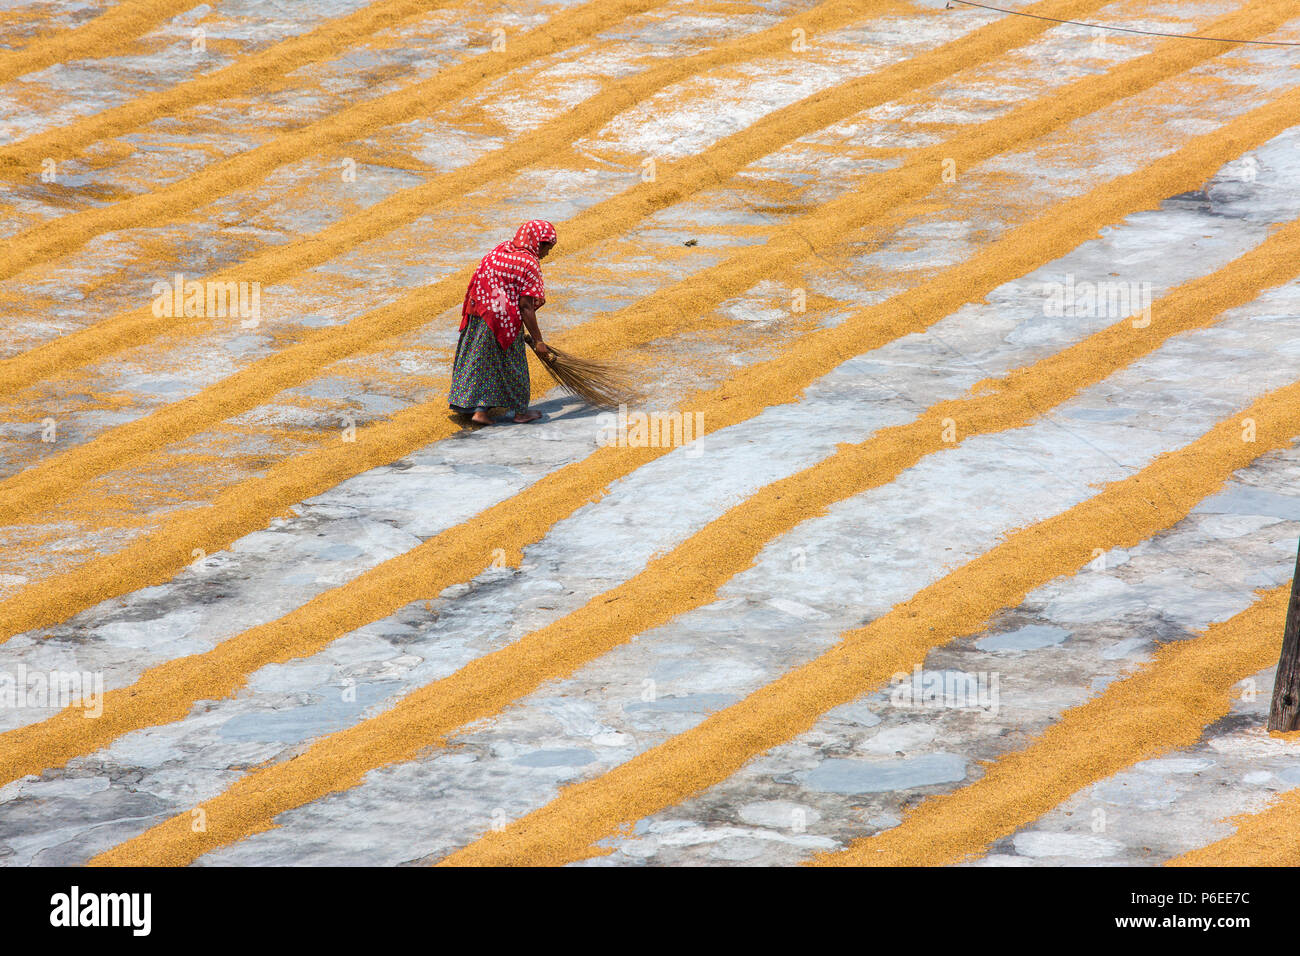 The labor women row rows of rice at Ishwardi Upazila, Pabna District in Rajshahi Division, Bangladesh. Stock Photo